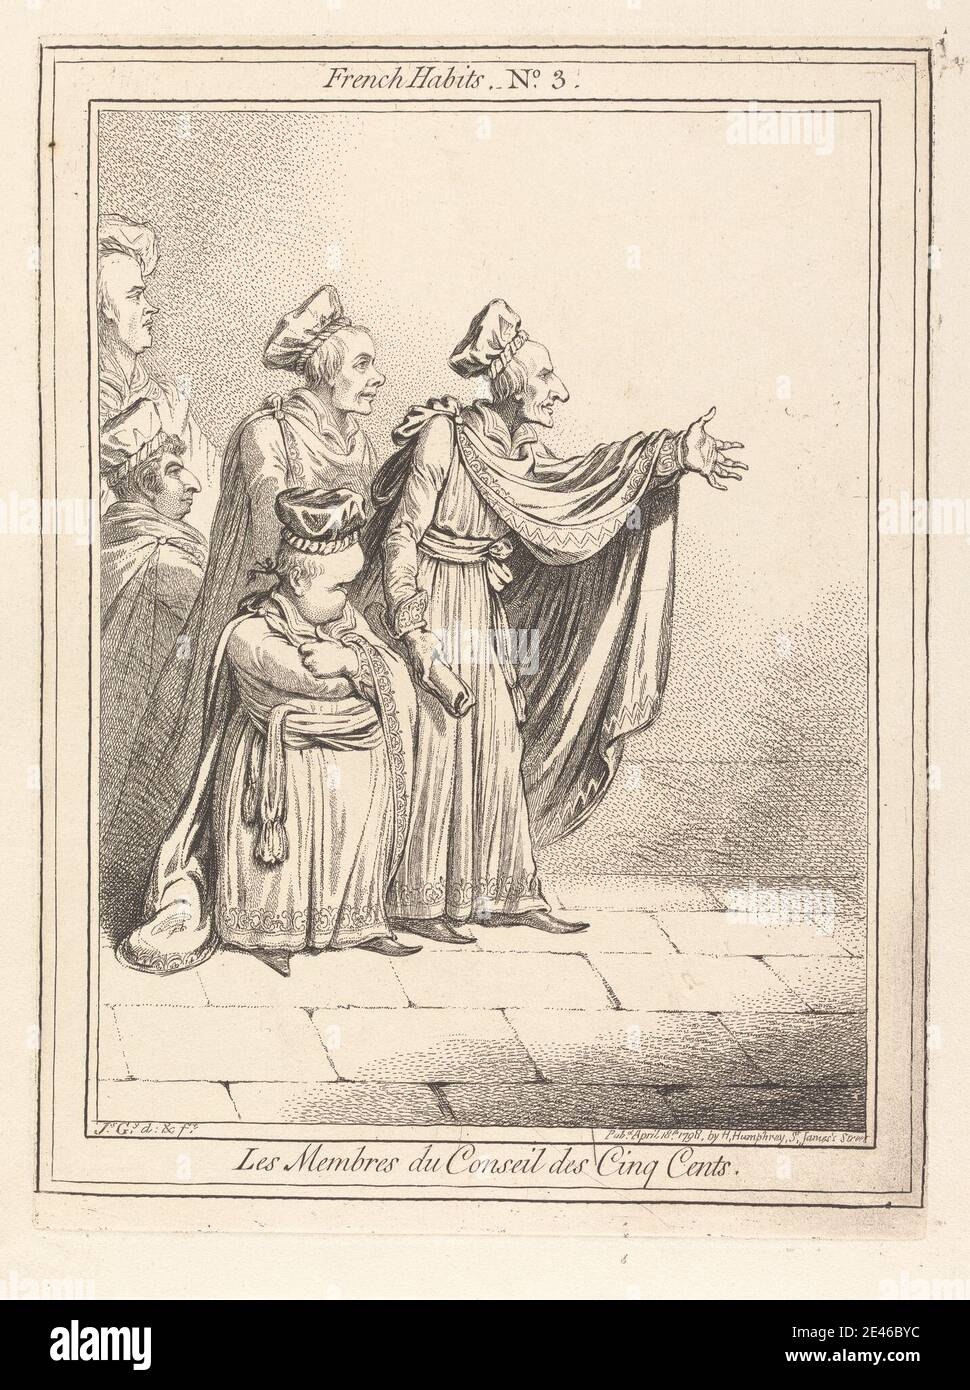 James Gillray, 1757â€“1815, British, Les Membres du Conseil des Cinq Cents. French Habits No. 3, 1798. Etching. Stock Photo